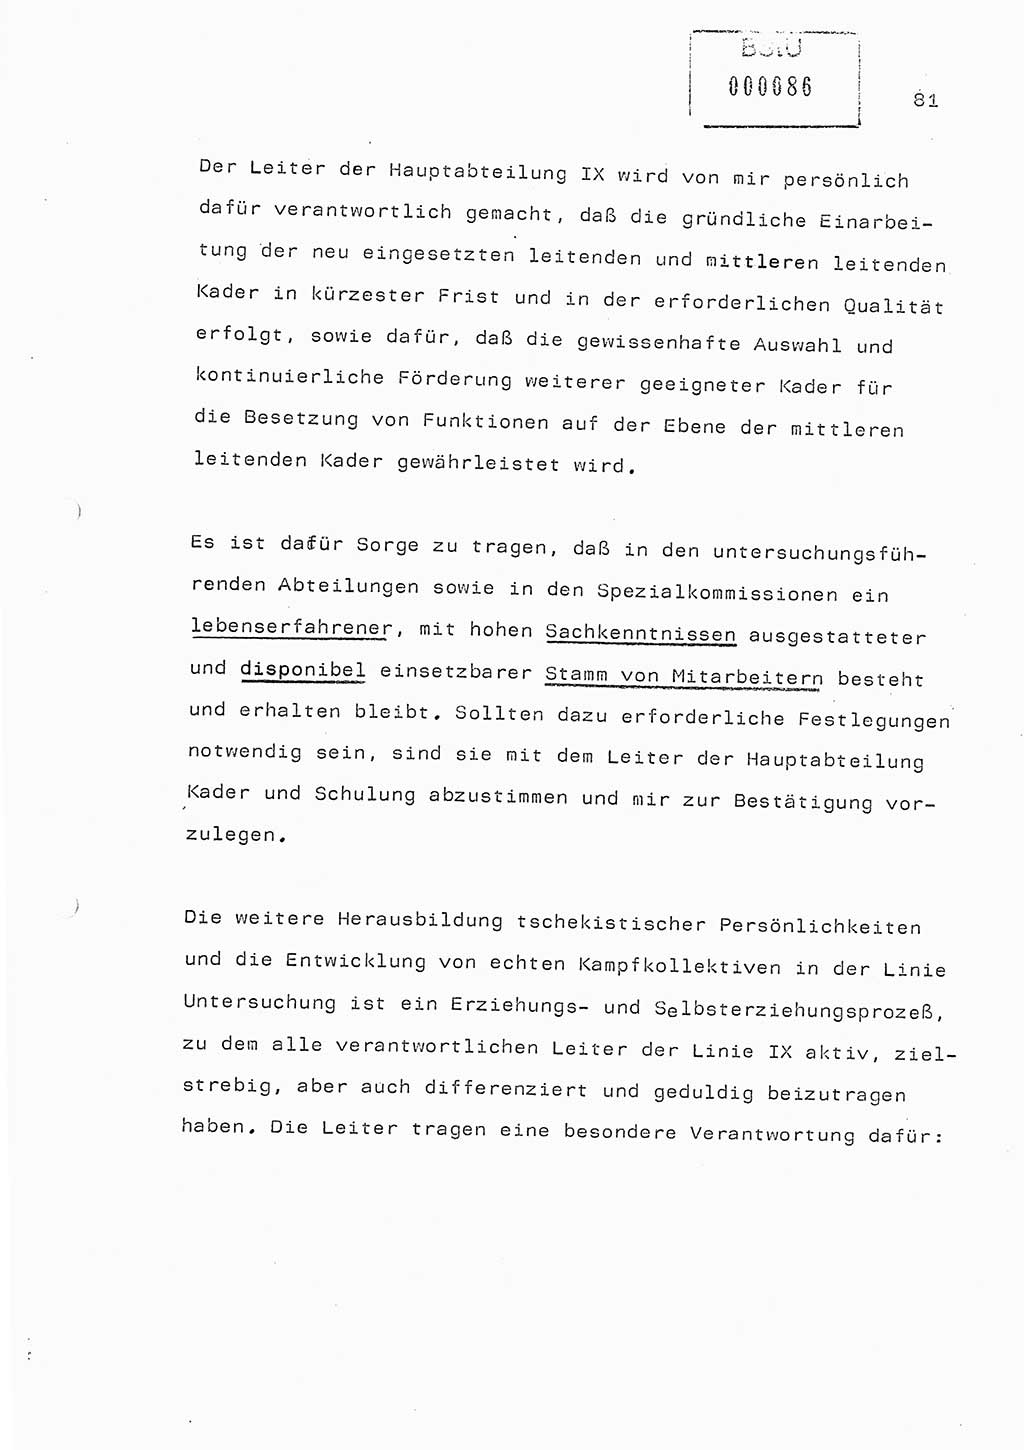 Referat (Generaloberst Erich Mielke) auf der Zentralen Dienstkonferenz am 24.5.1979 [Ministerium für Staatssicherheit (MfS), Deutsche Demokratische Republik (DDR), Der Minister], Berlin 1979, Seite 81 (Ref. DK DDR MfS Min. /79 1979, S. 81)